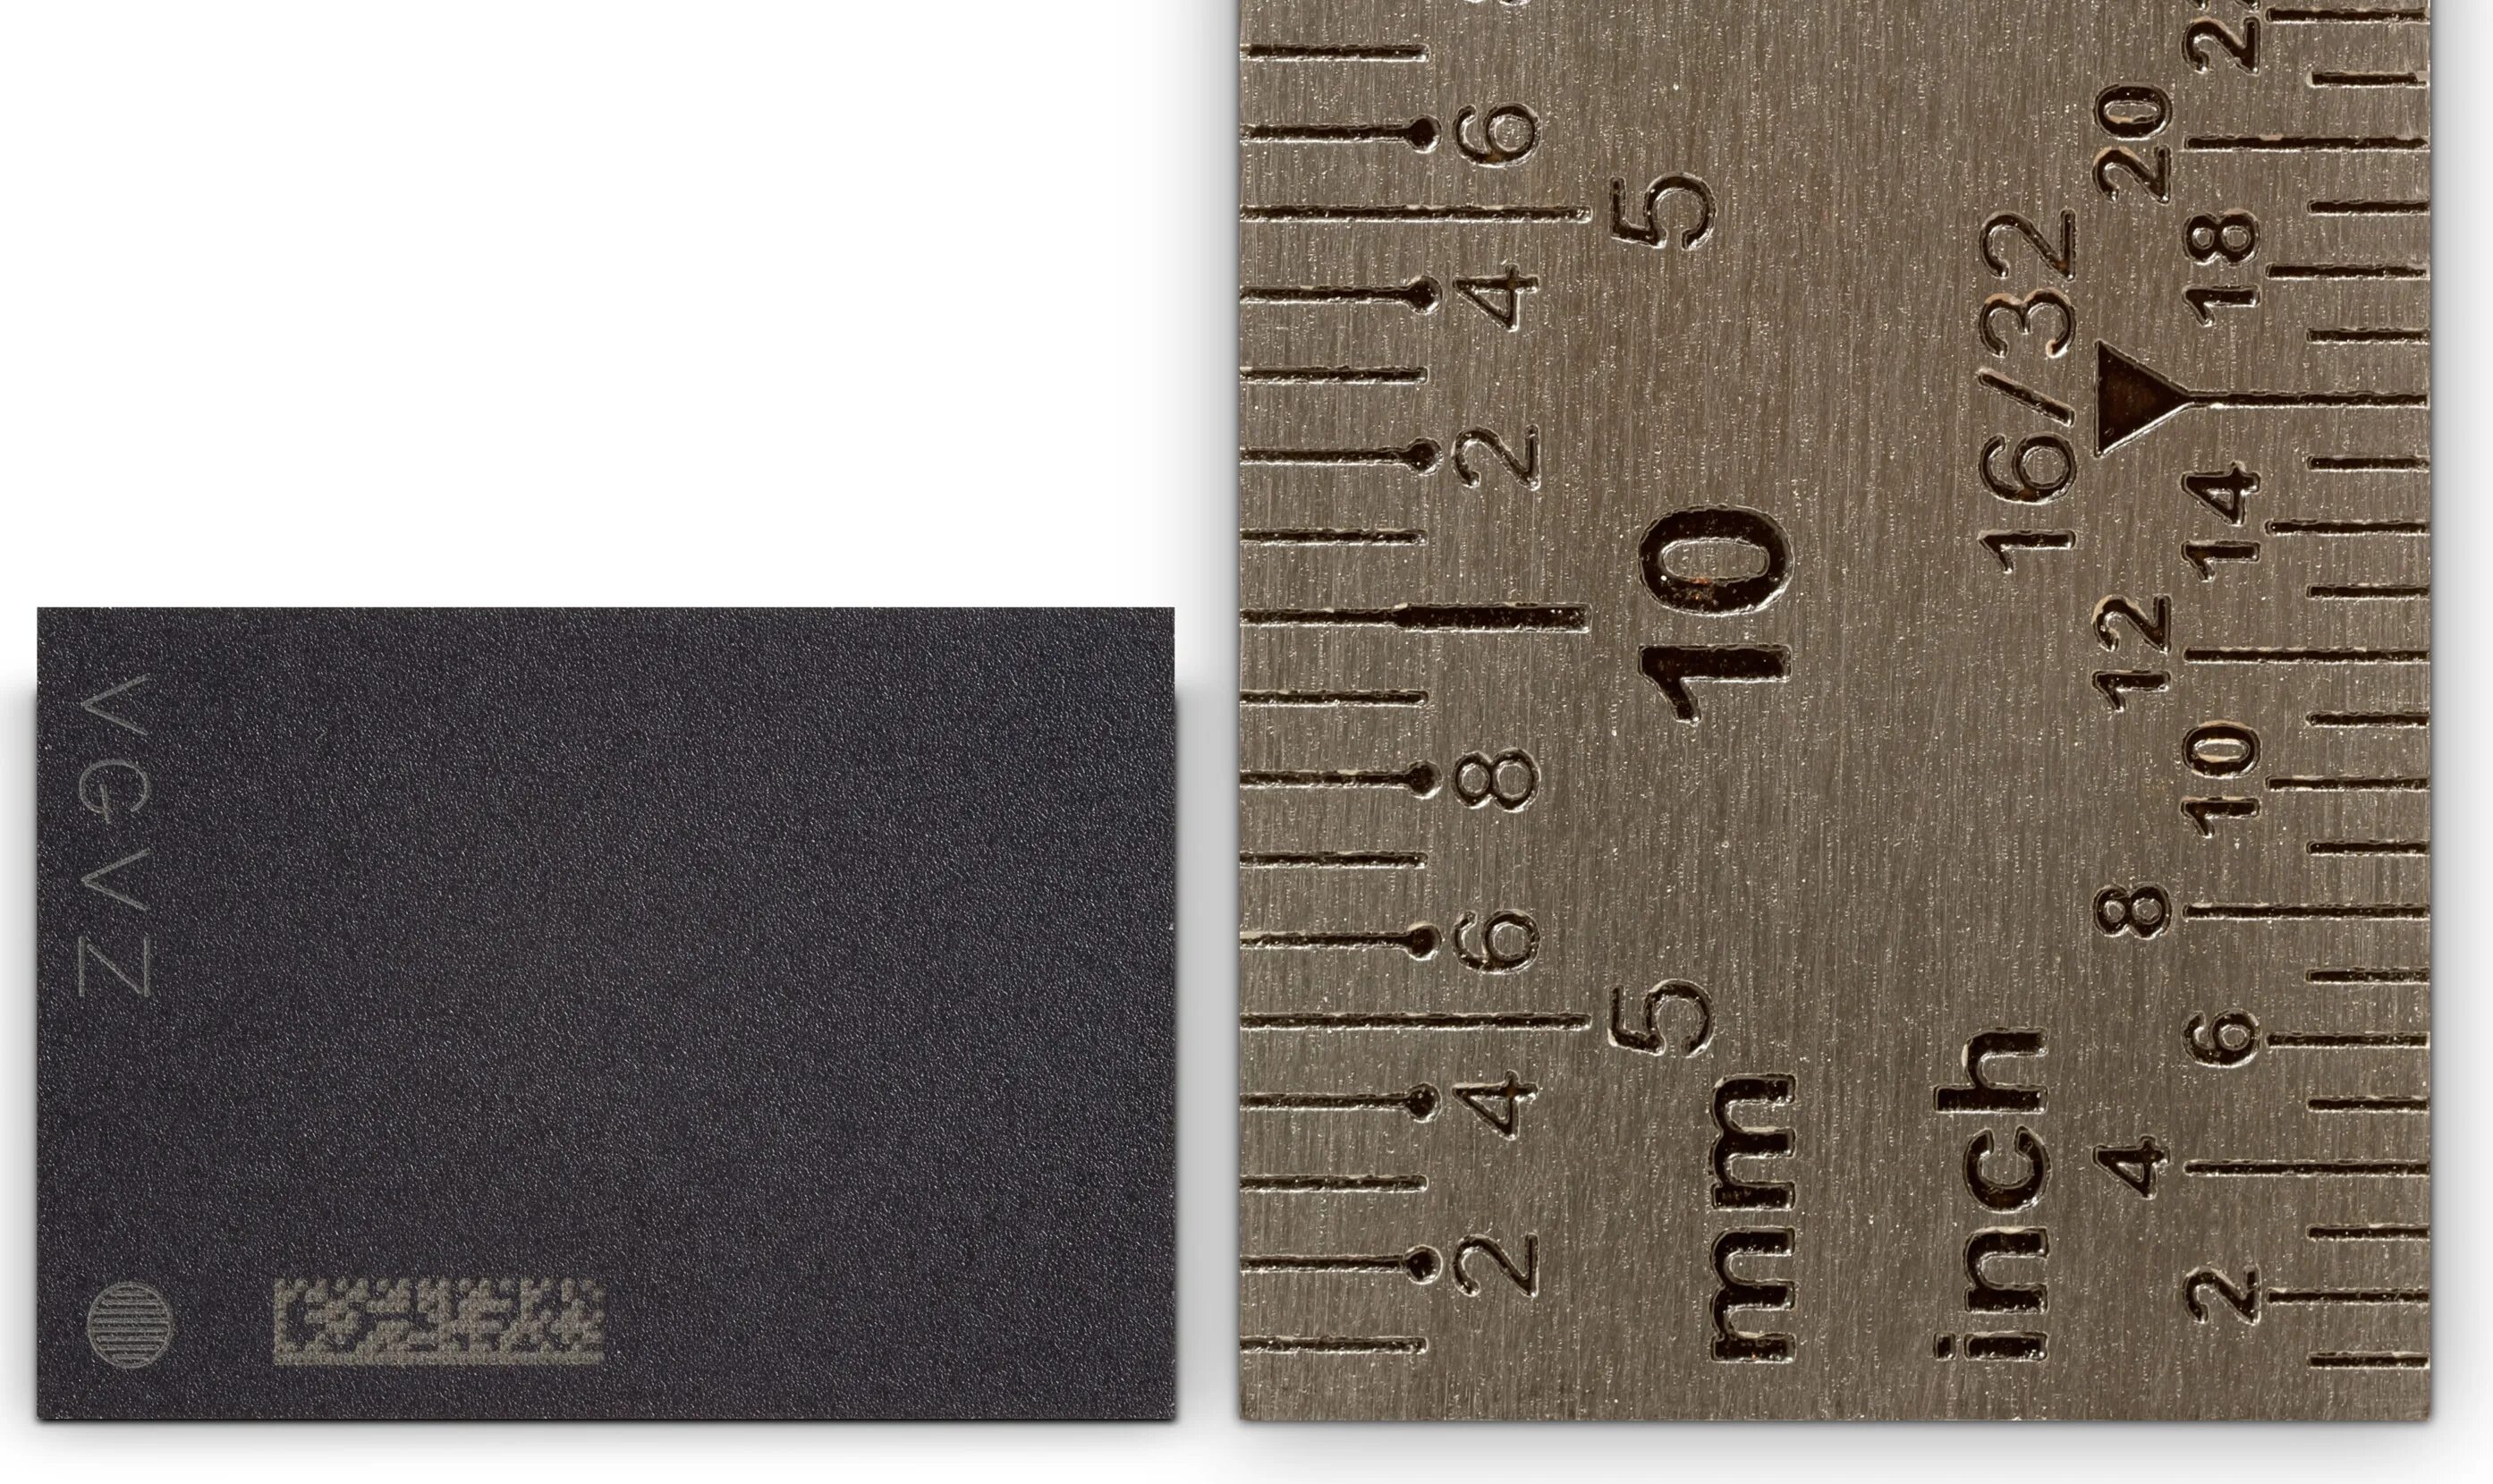 Размеры памяти видеокарты. Gddr5x память Micron. Габариты чипа памяти gddr5. Размер чипа видеопамяти gddr5. Чипы памяти микрон.